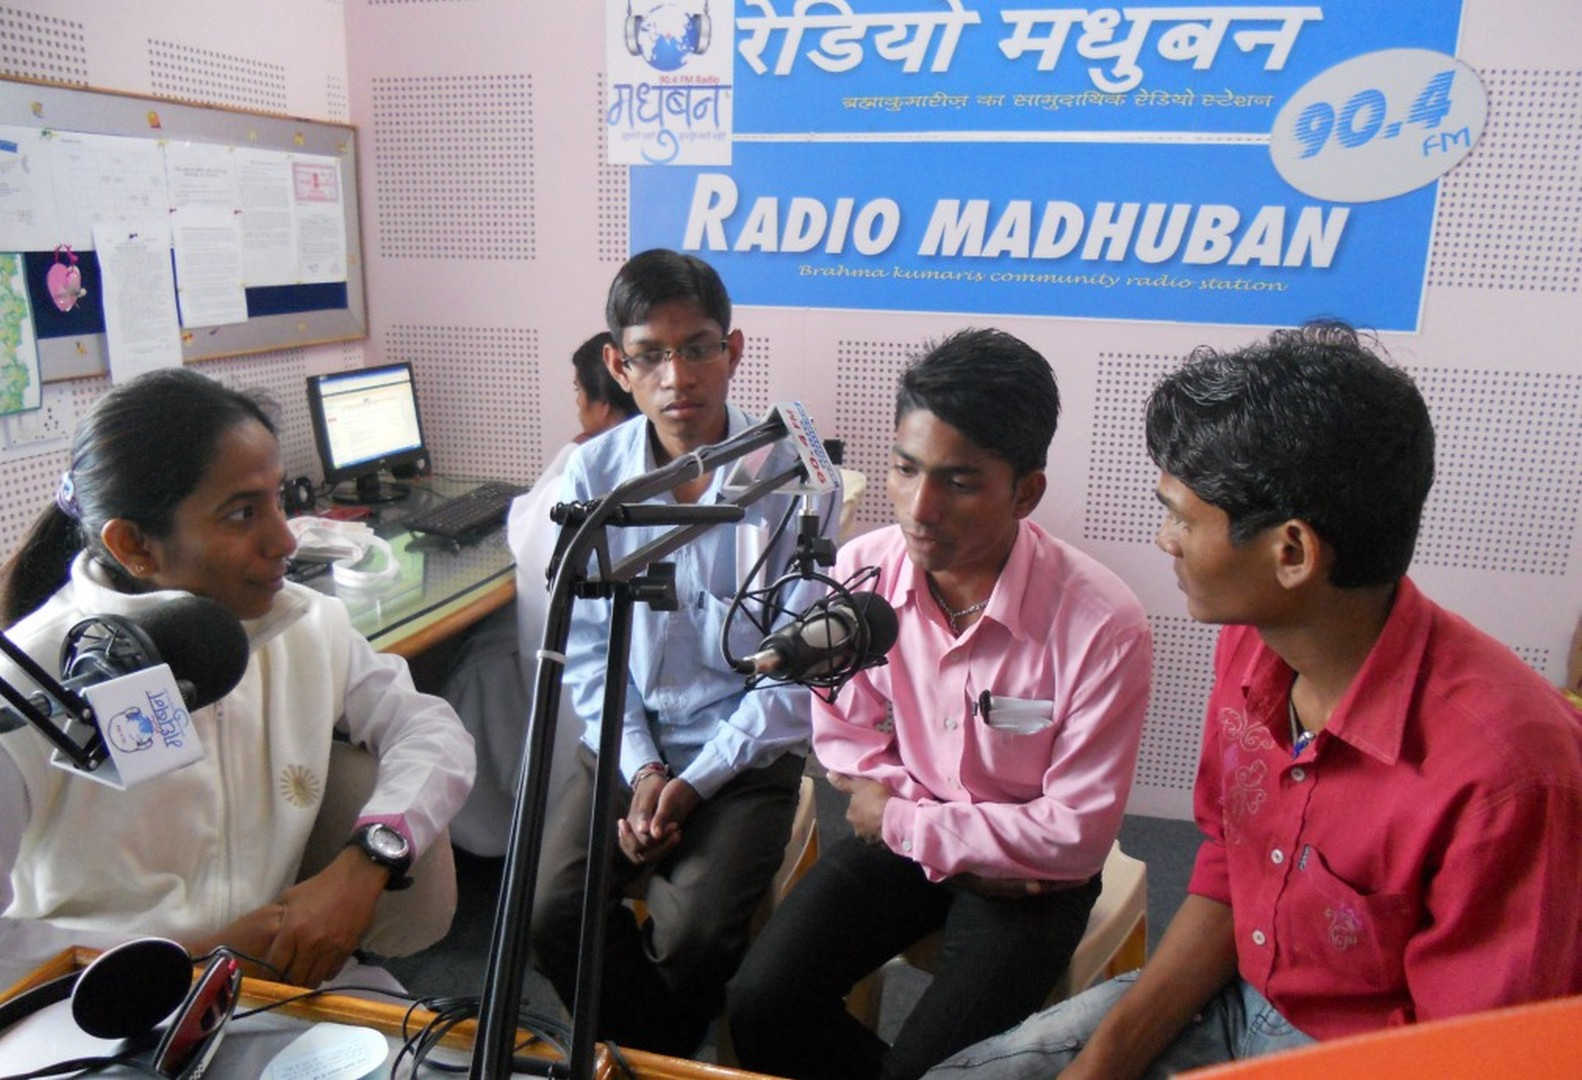 Madhuban radio team - 23